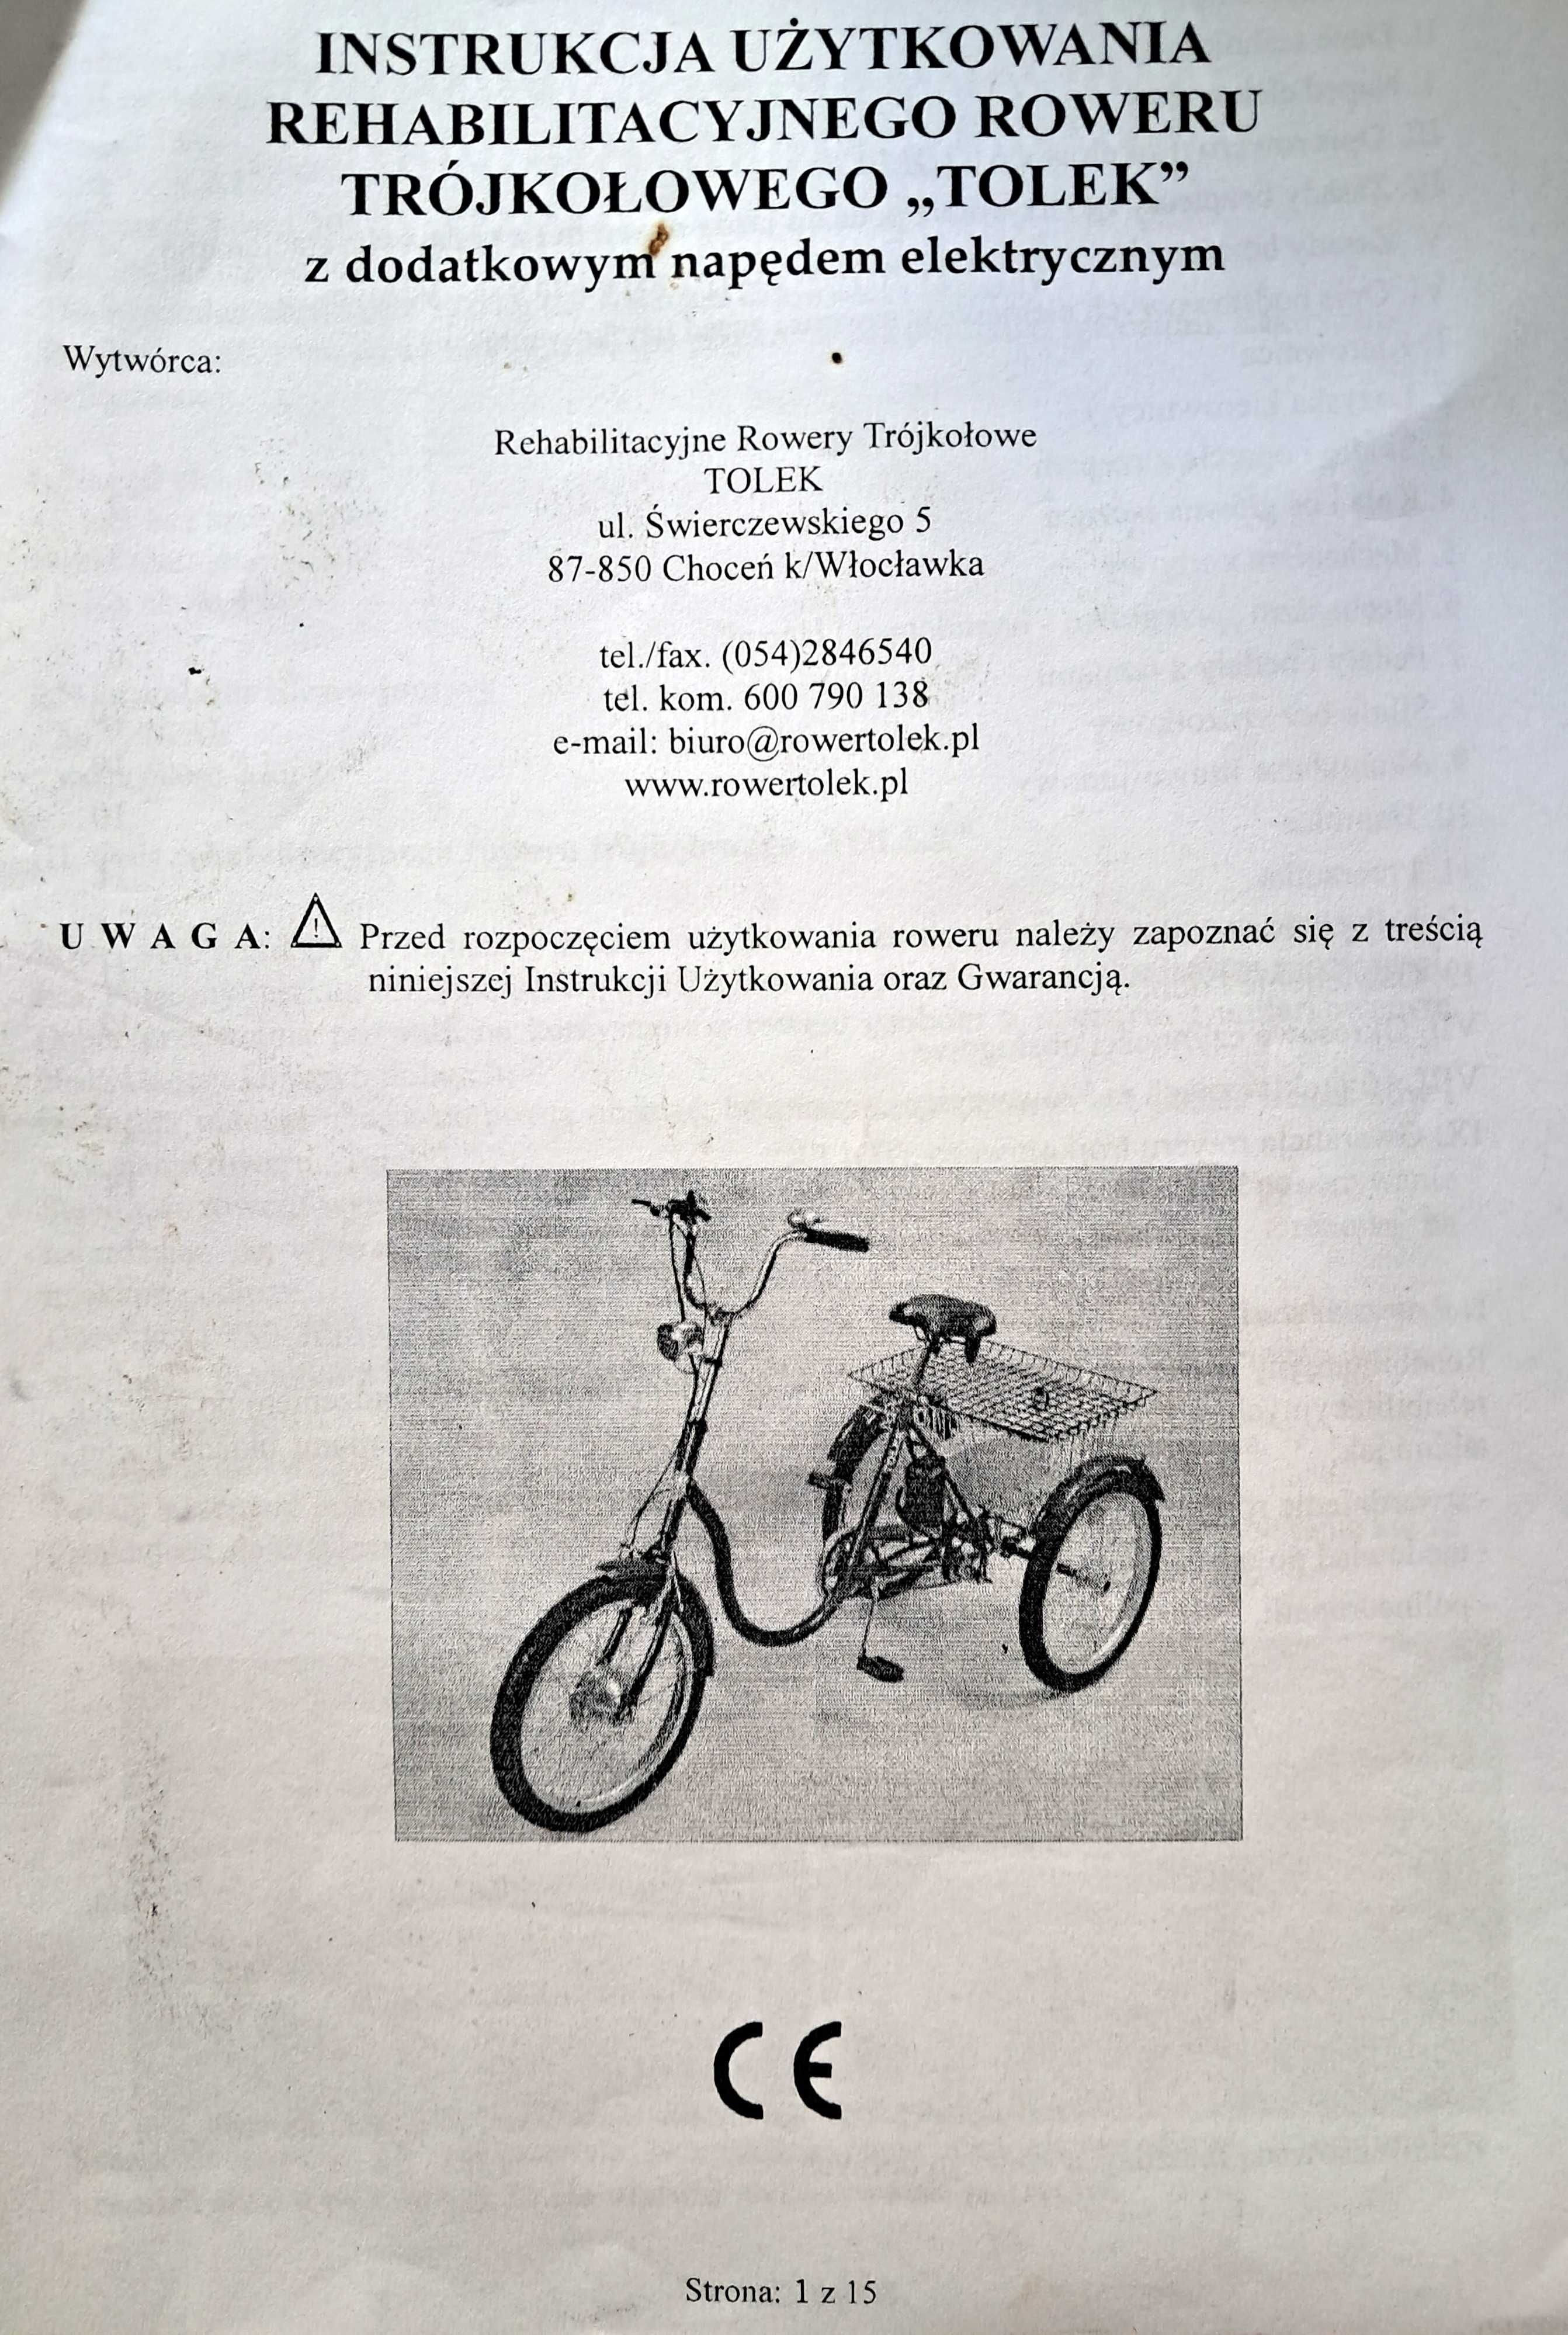 Trójkołowy rower rehabilitacyjny "Tolek z dod. napędem elektrycznym.